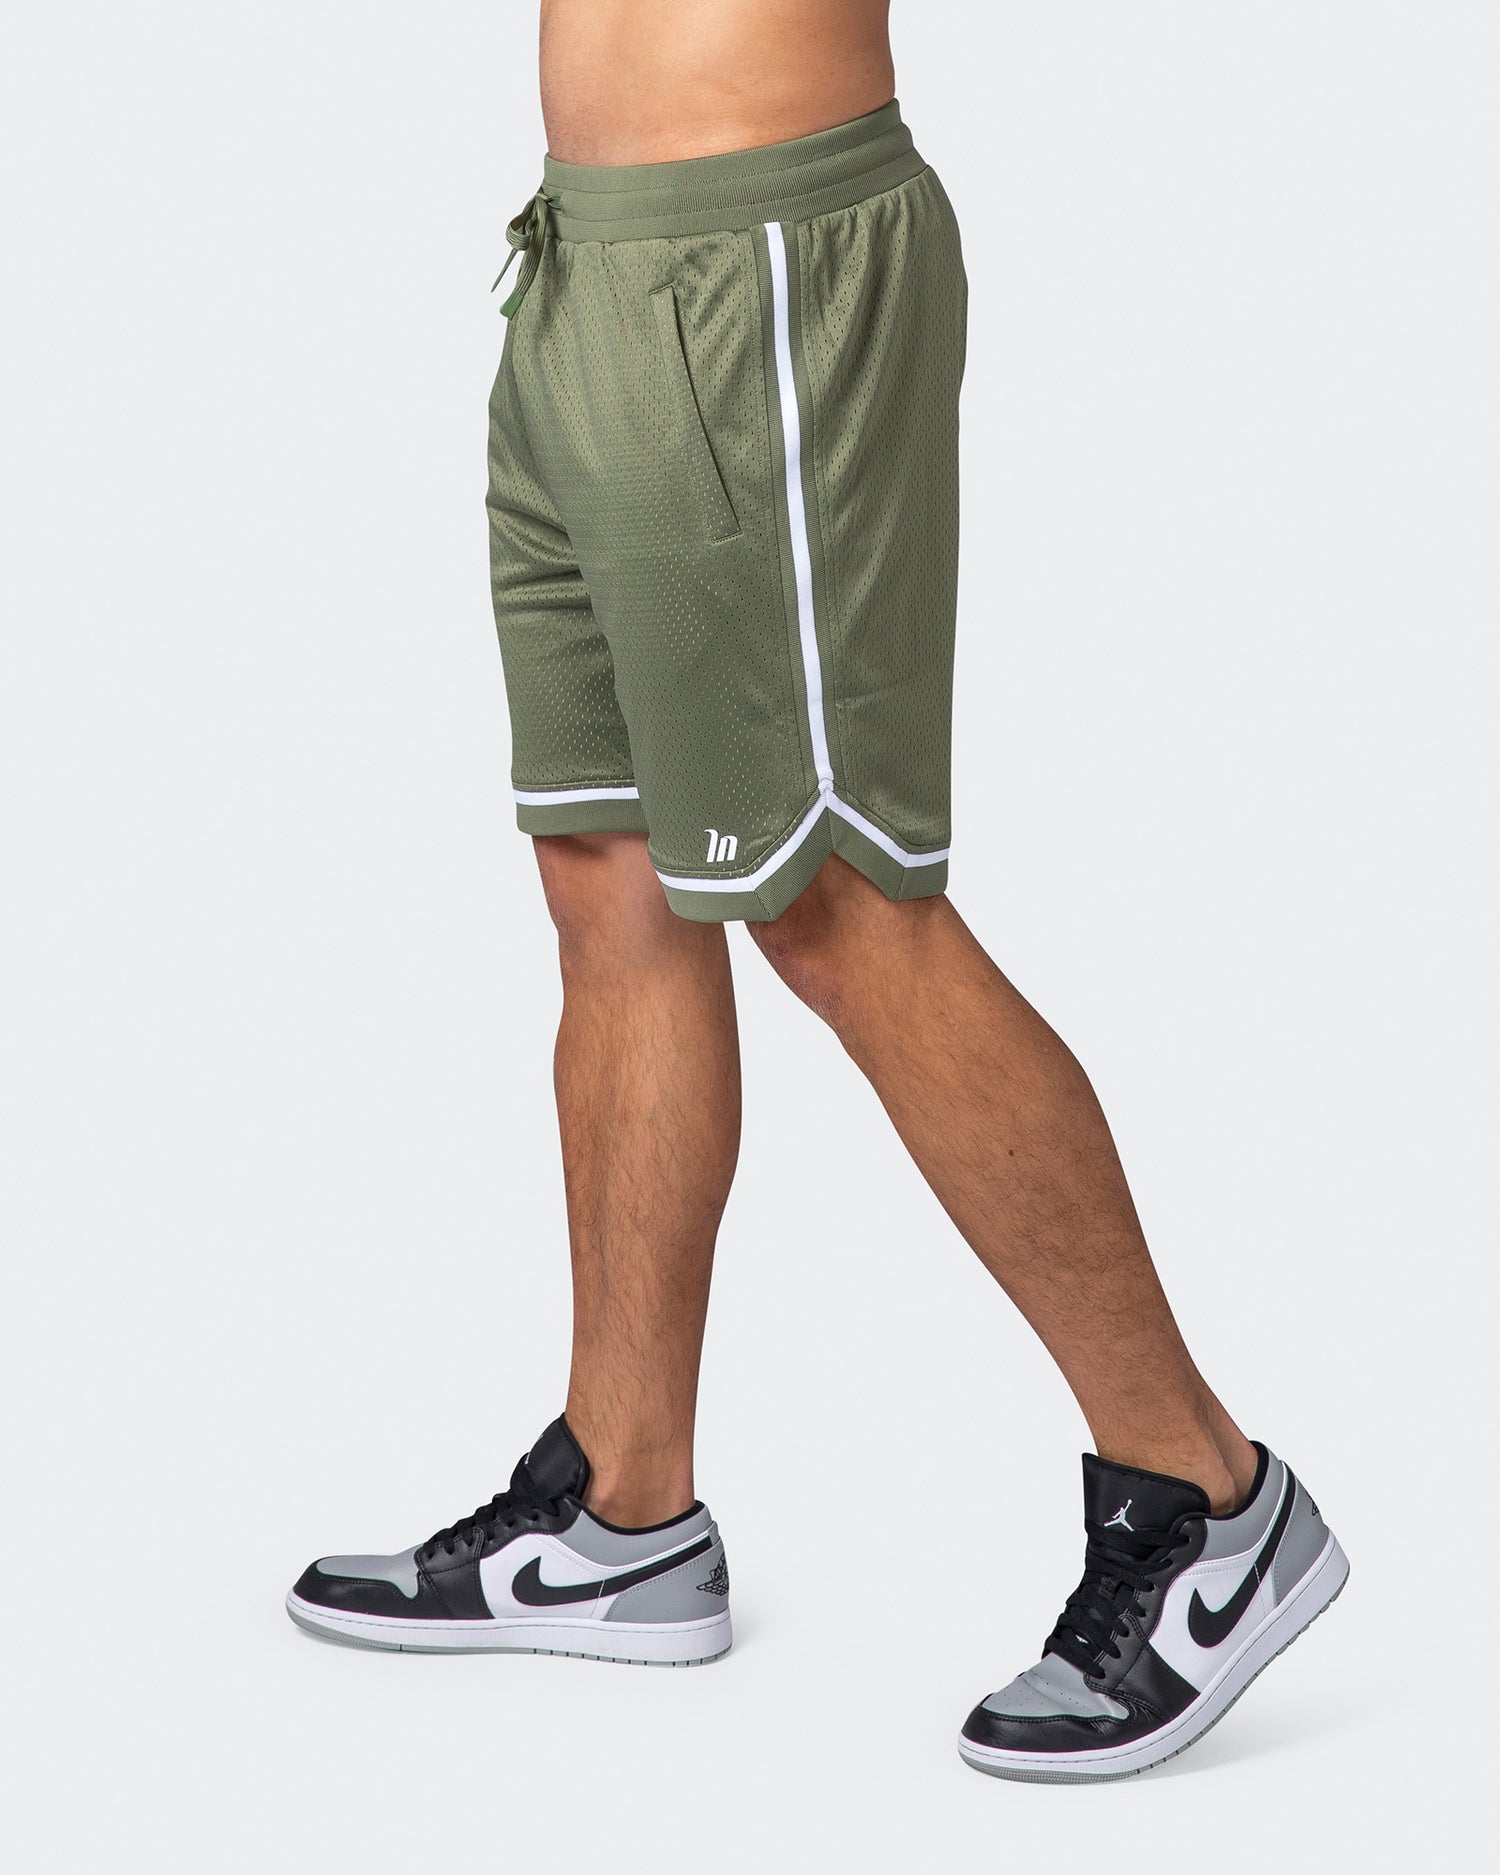 8" Basketball Shorts - Sage Green